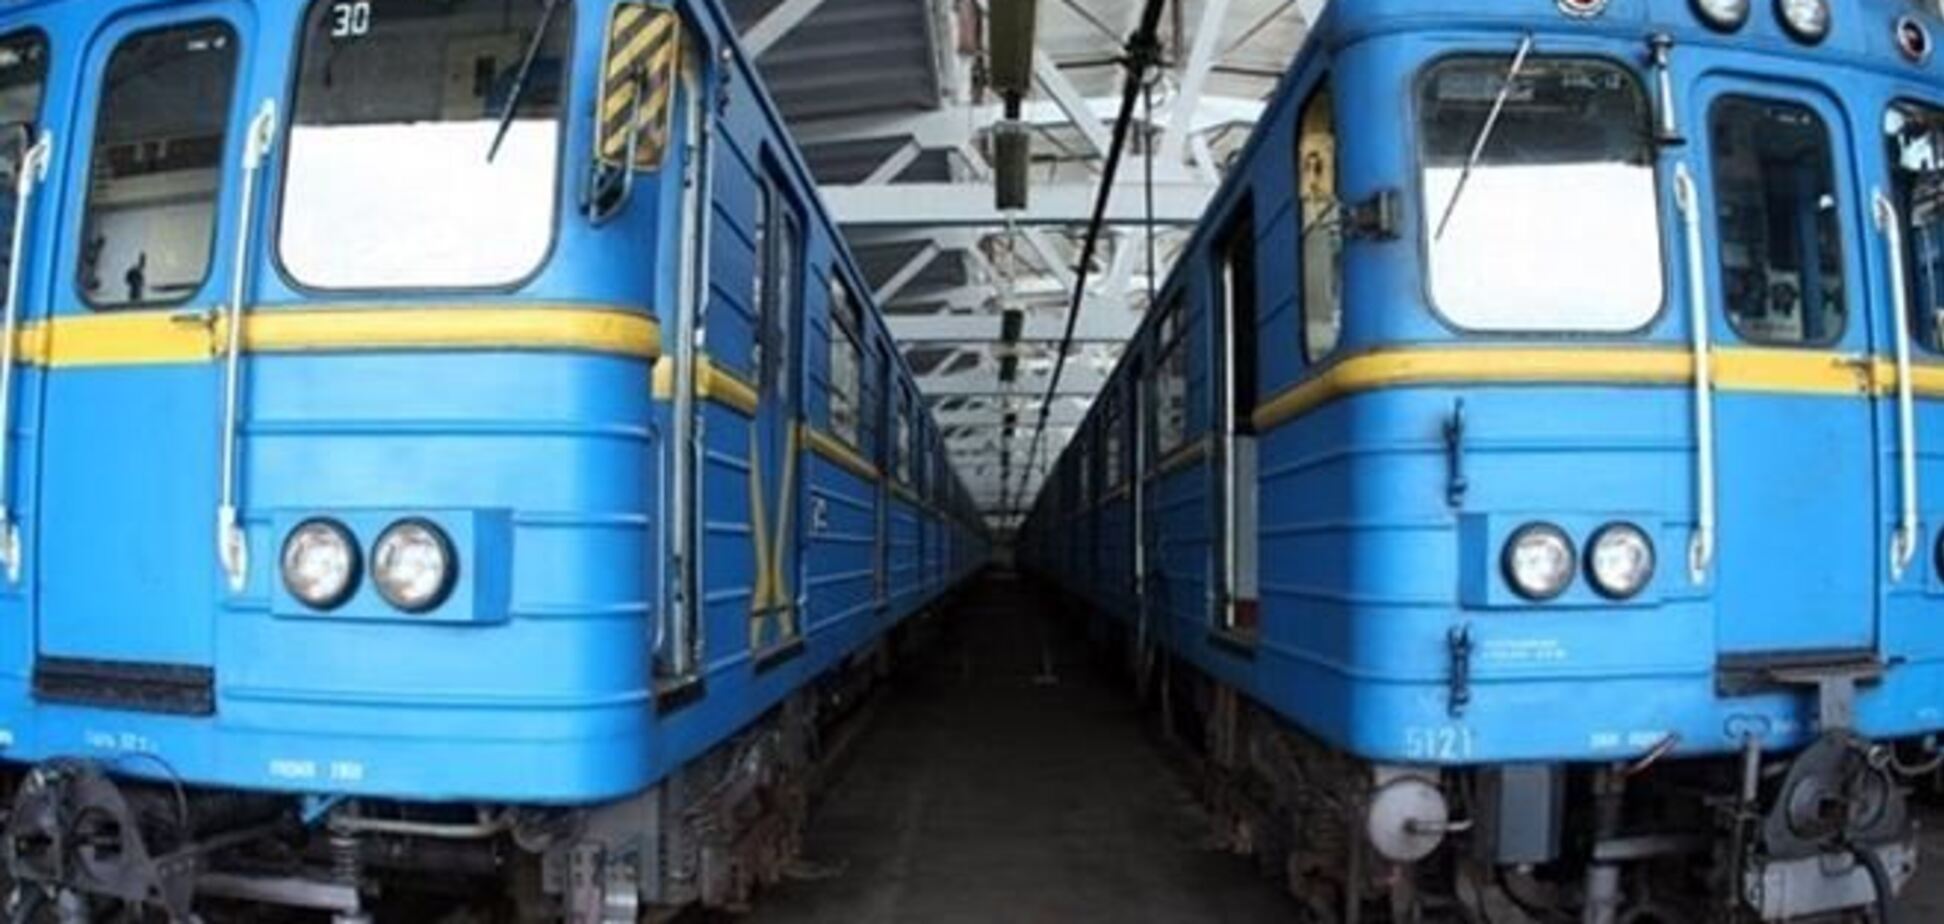 Злоупотребления в киевском метро: открыто 5 уголовных дел